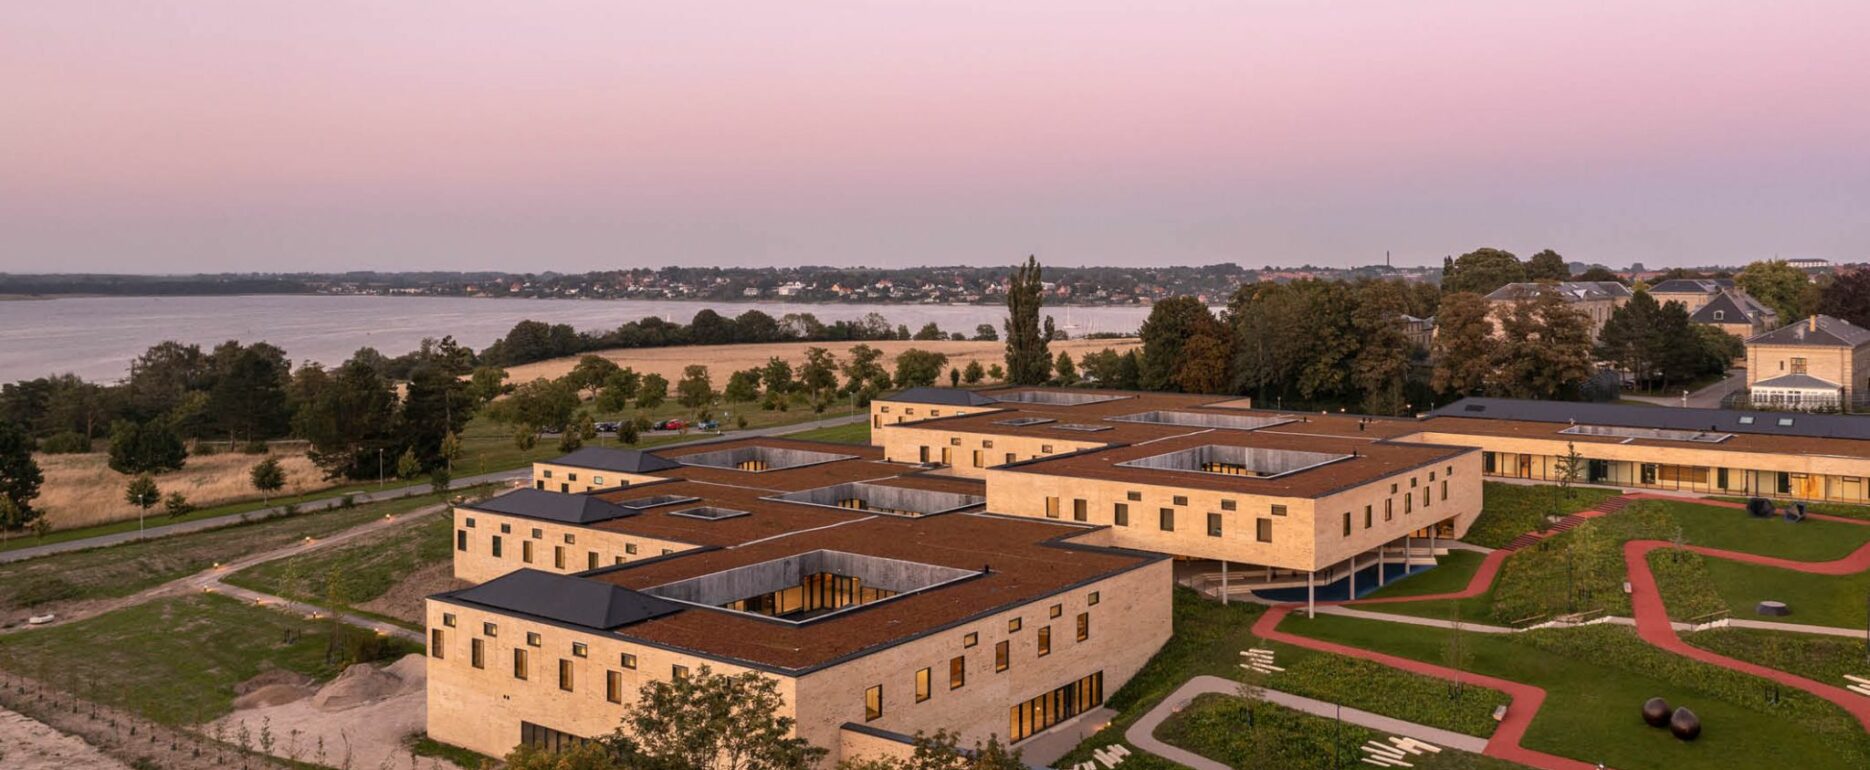 Neue forensische Psychiatrie am Sankt Hans in Roskilde - Top view - Fitness equipment